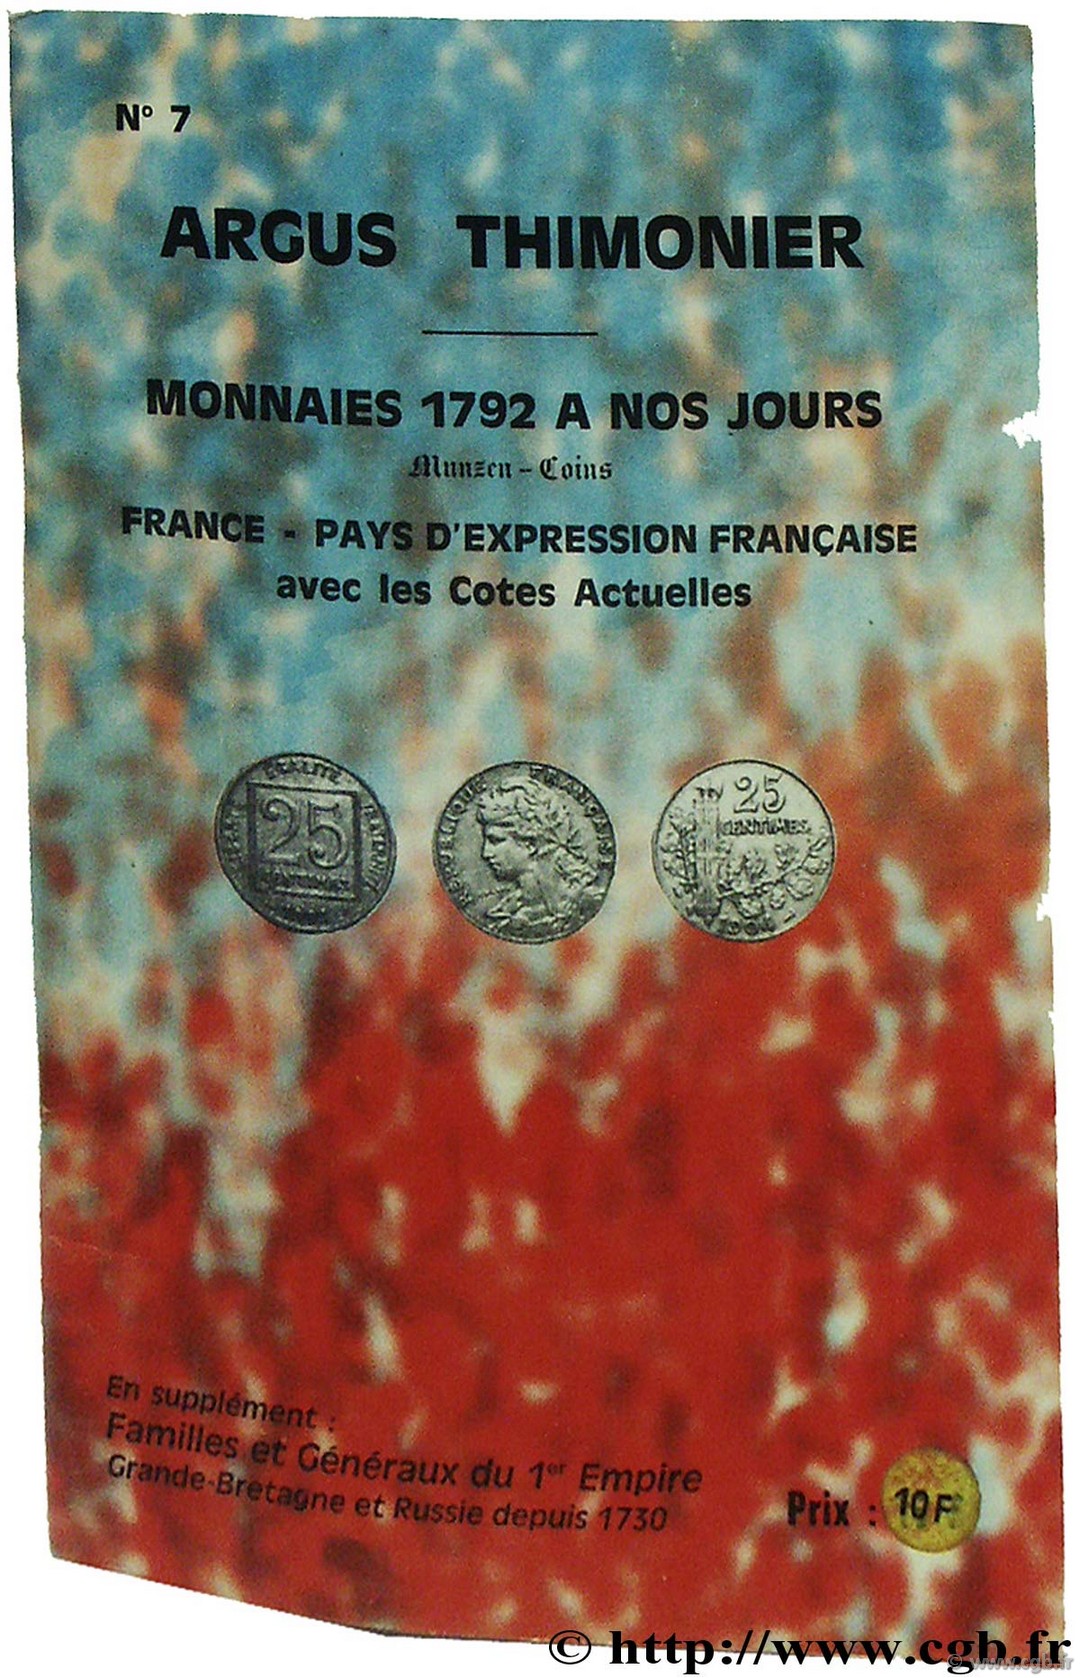 Argus Thimonier, monnaies 1792 à nos jours. France - pays d expression française THIMONIER